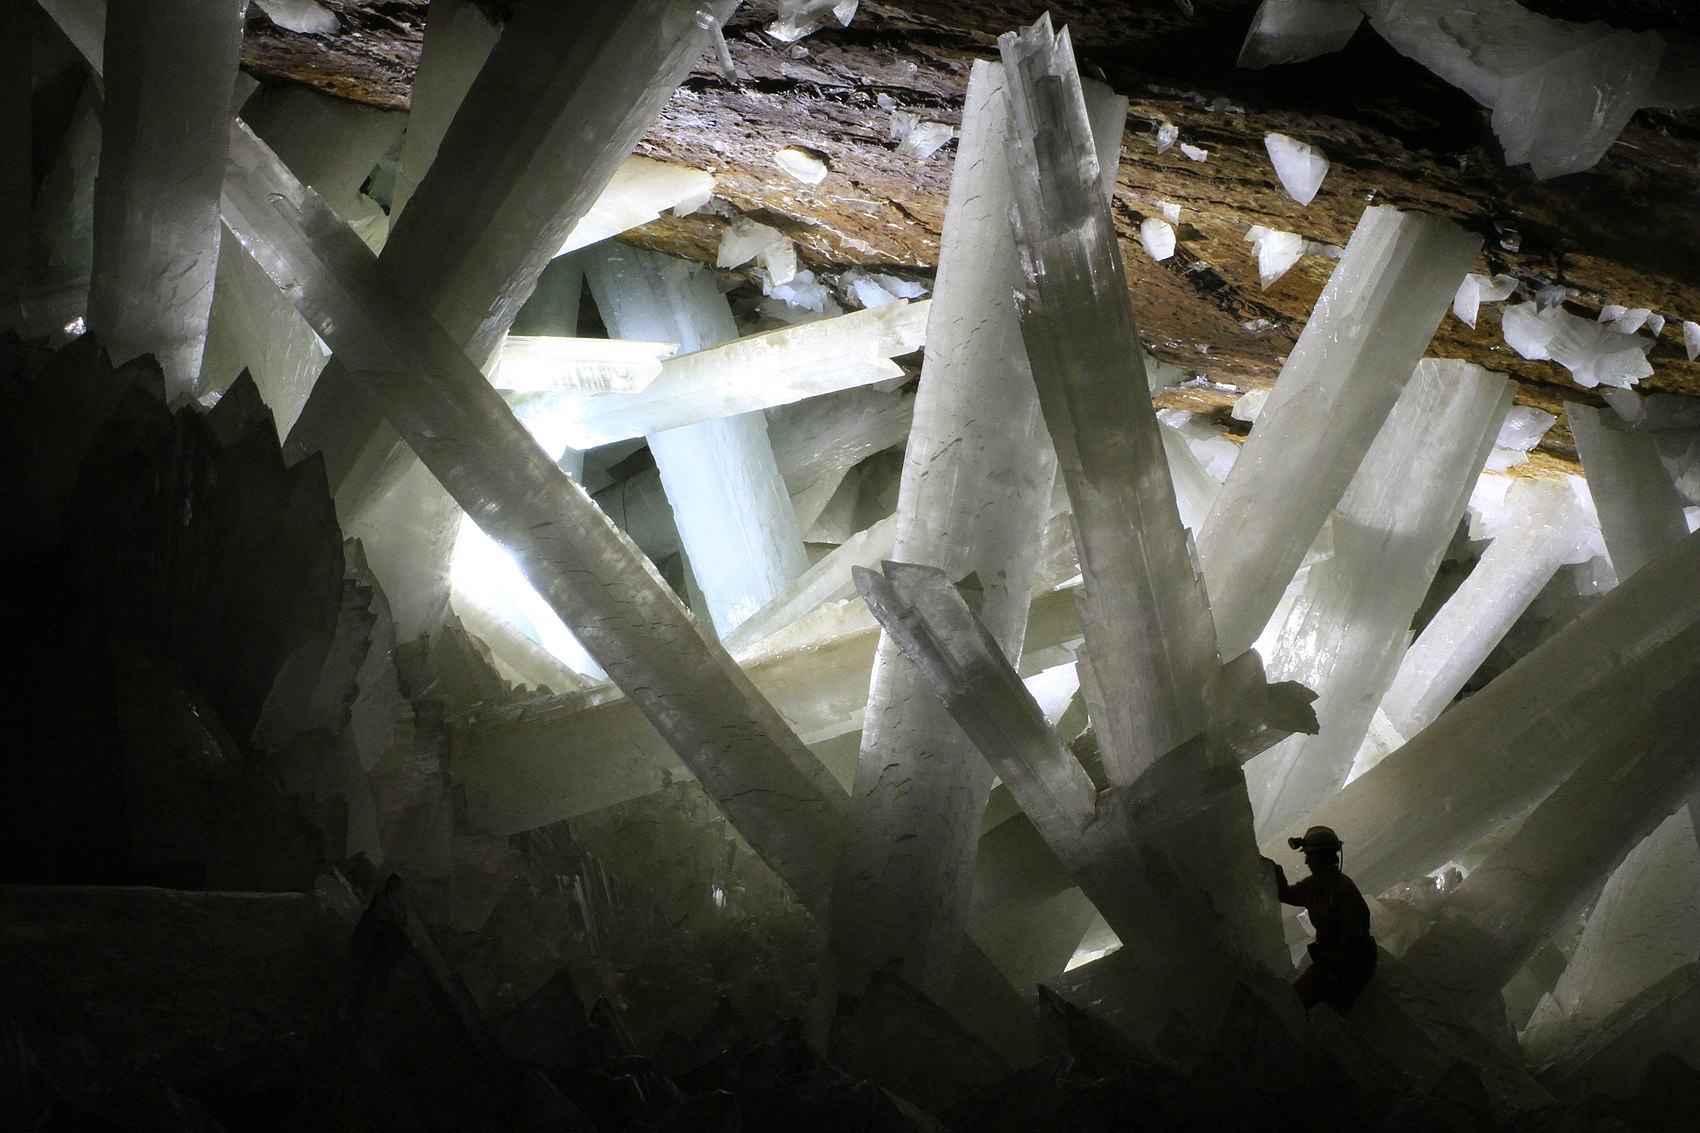 Viquijúnior:Parlem de la cristal·lització a la mina de Naica/12-Formació cristalls Cueva de las Espadas